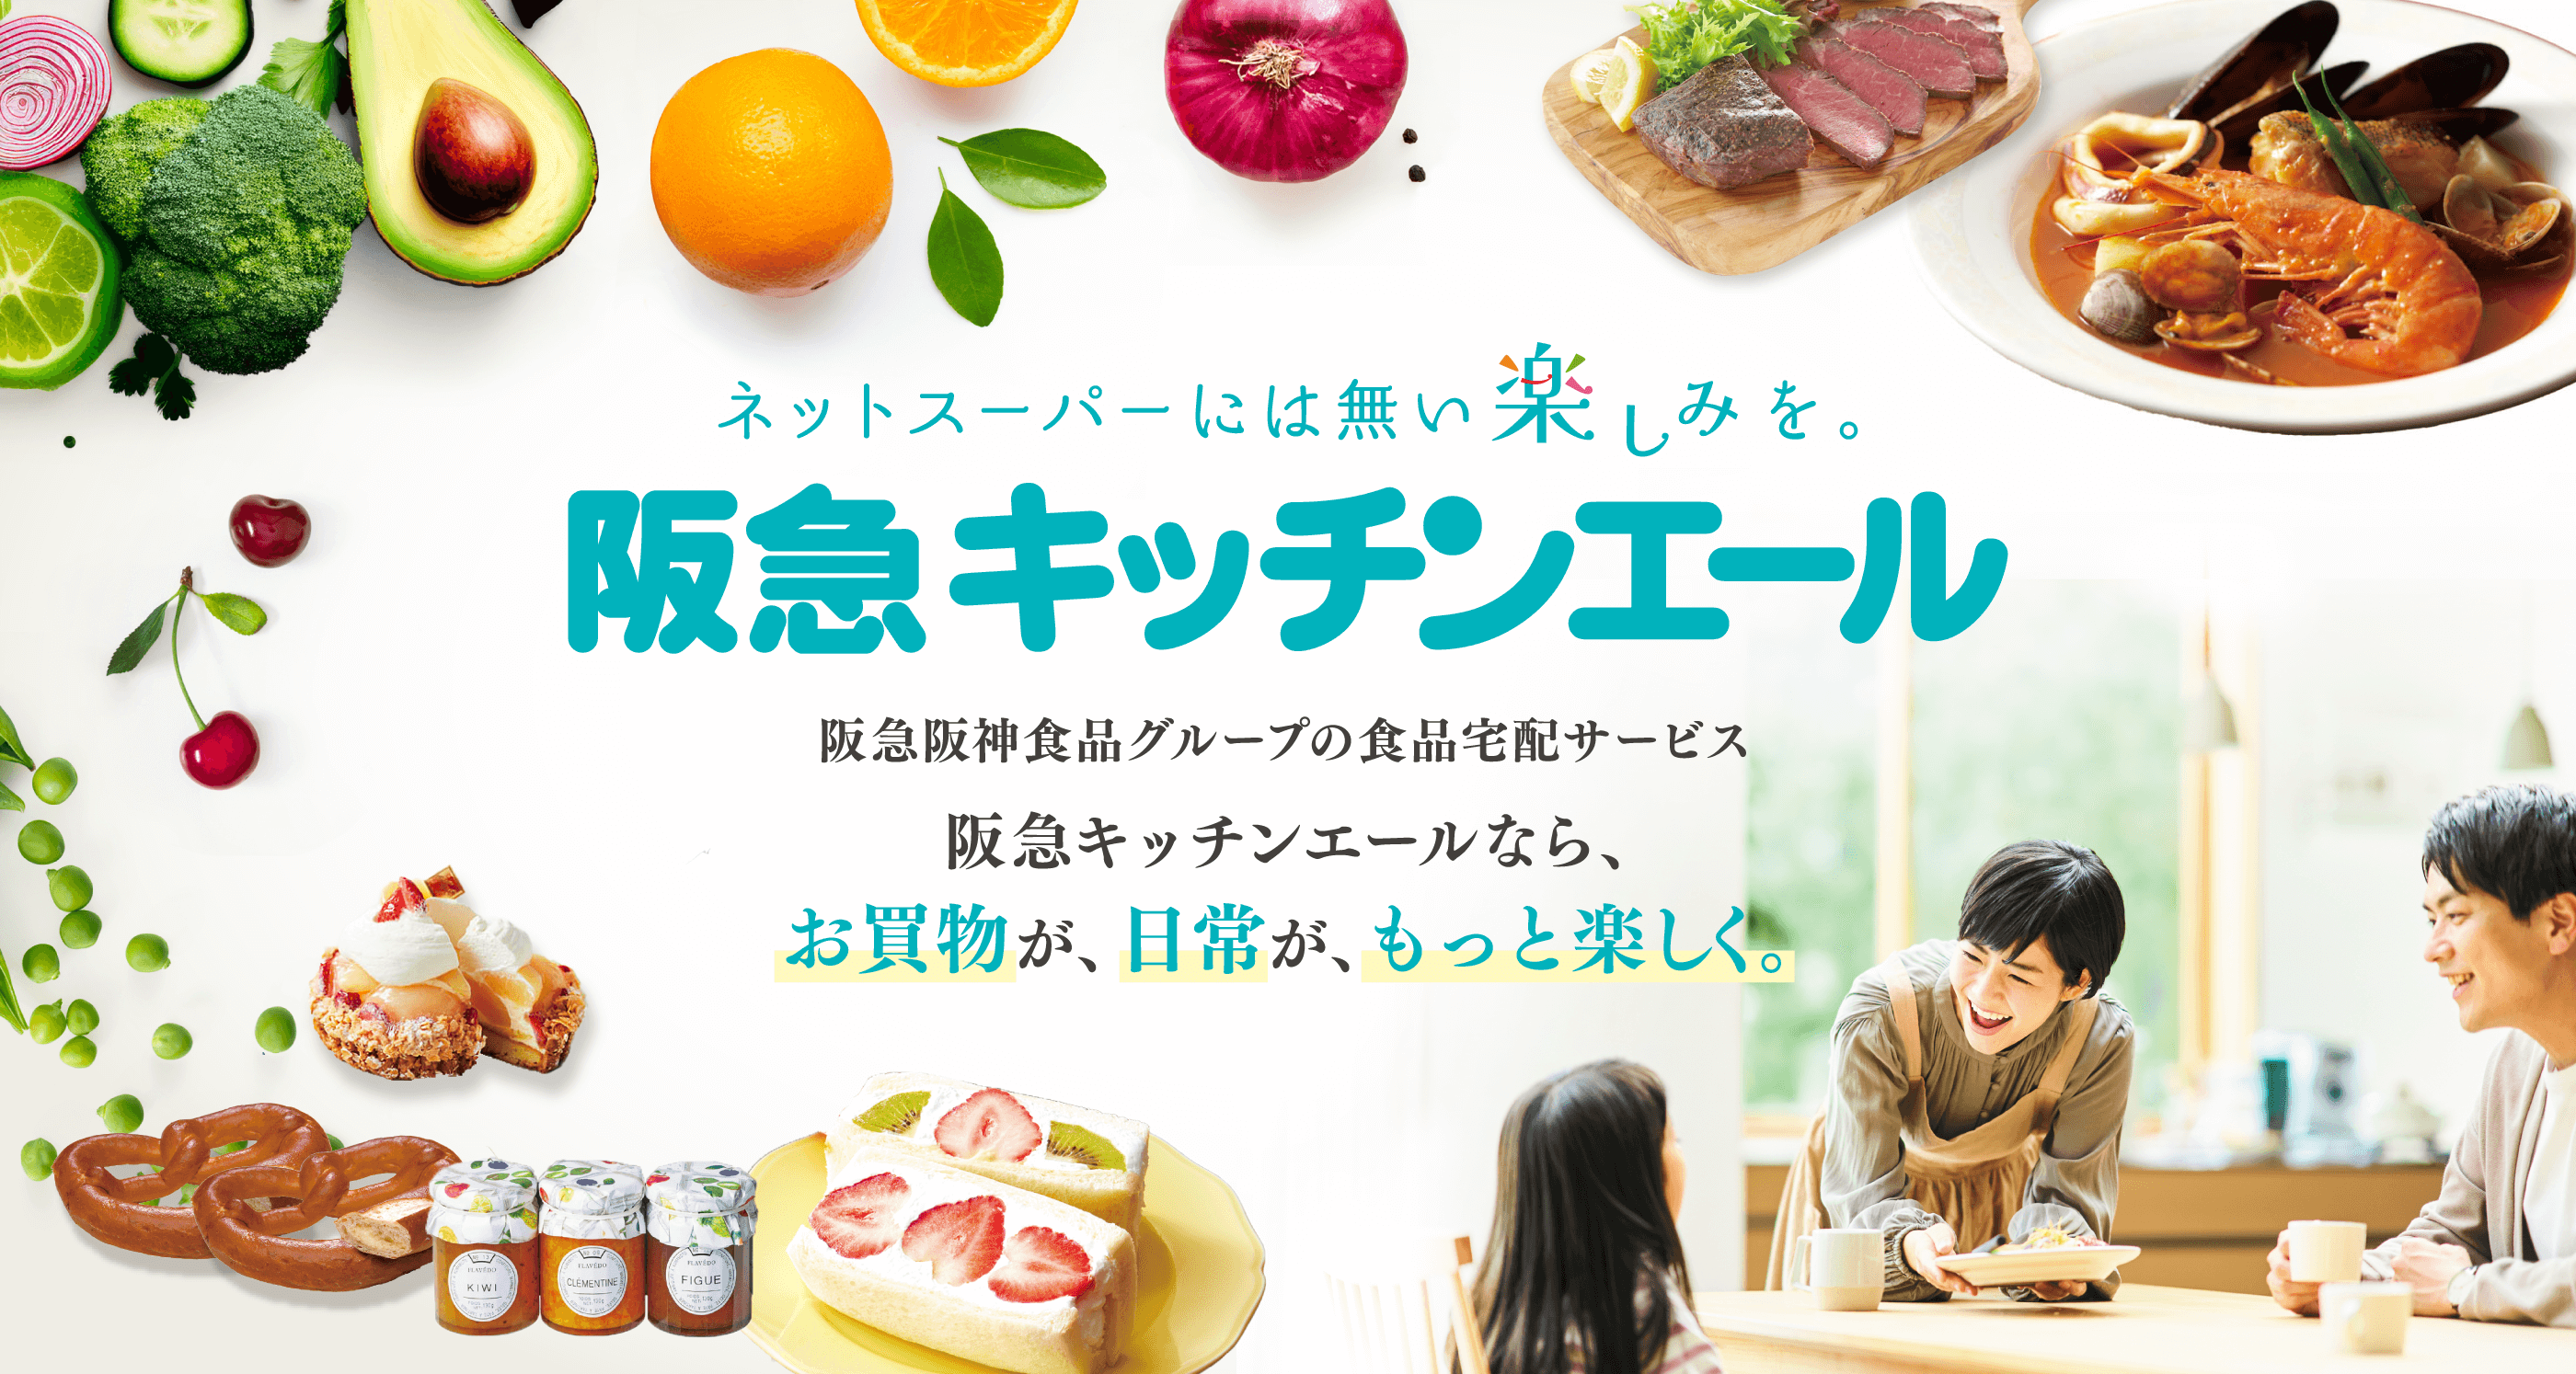 ネットスーパーには無い楽しみを。阪急キッチンエール 阪急阪神食品グループの食品宅配サービス 阪急キッチンエールなら、お買物が、日常が、もっと楽しく。